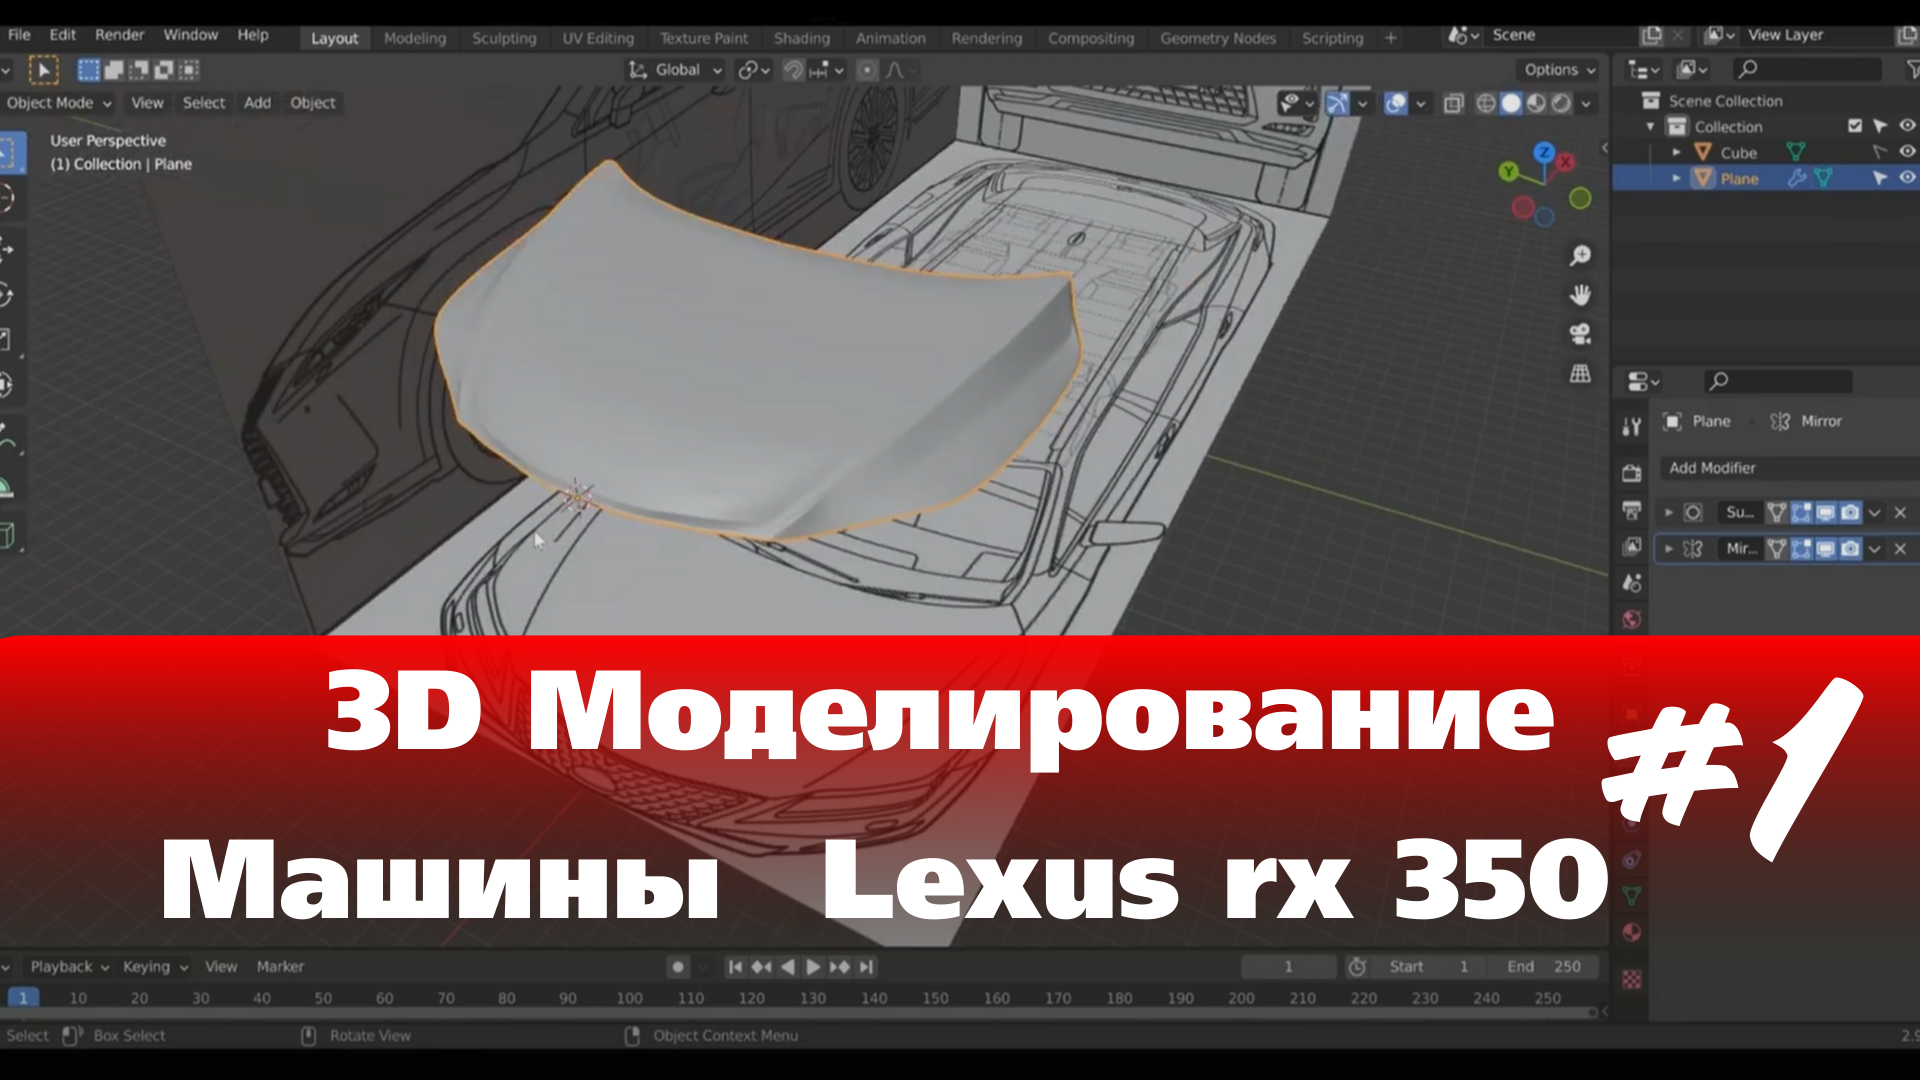 3D Моделирование Машины в Blender  - Lexus rx 350  часть 1